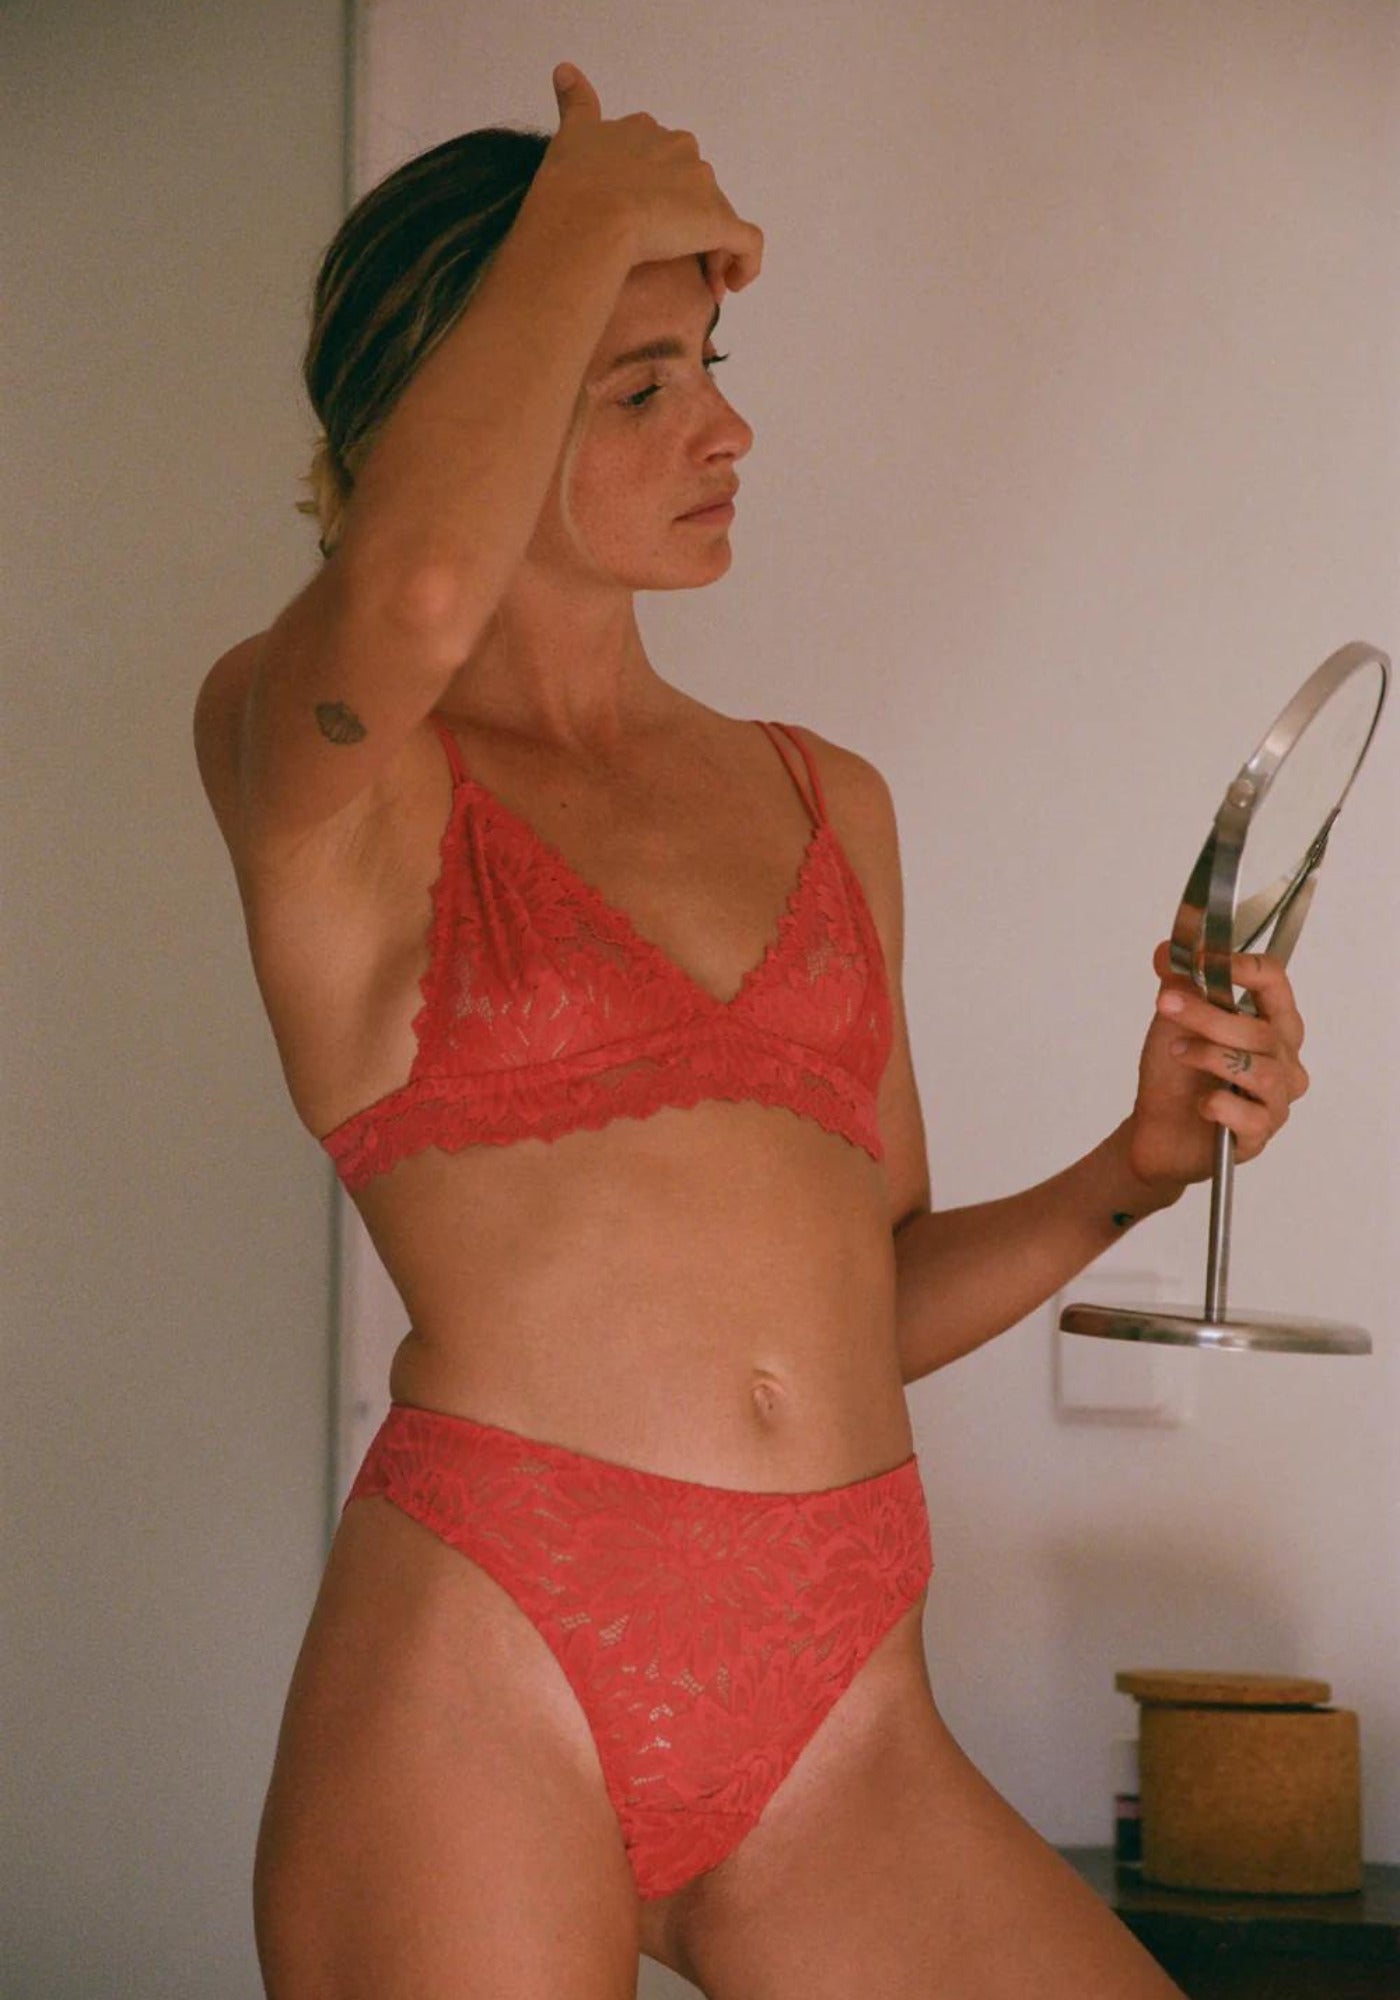 La femme se regarde dans un miroir et porte le soutien-gorge triangle Tiaki rouge lychee de chez Nénés Paris